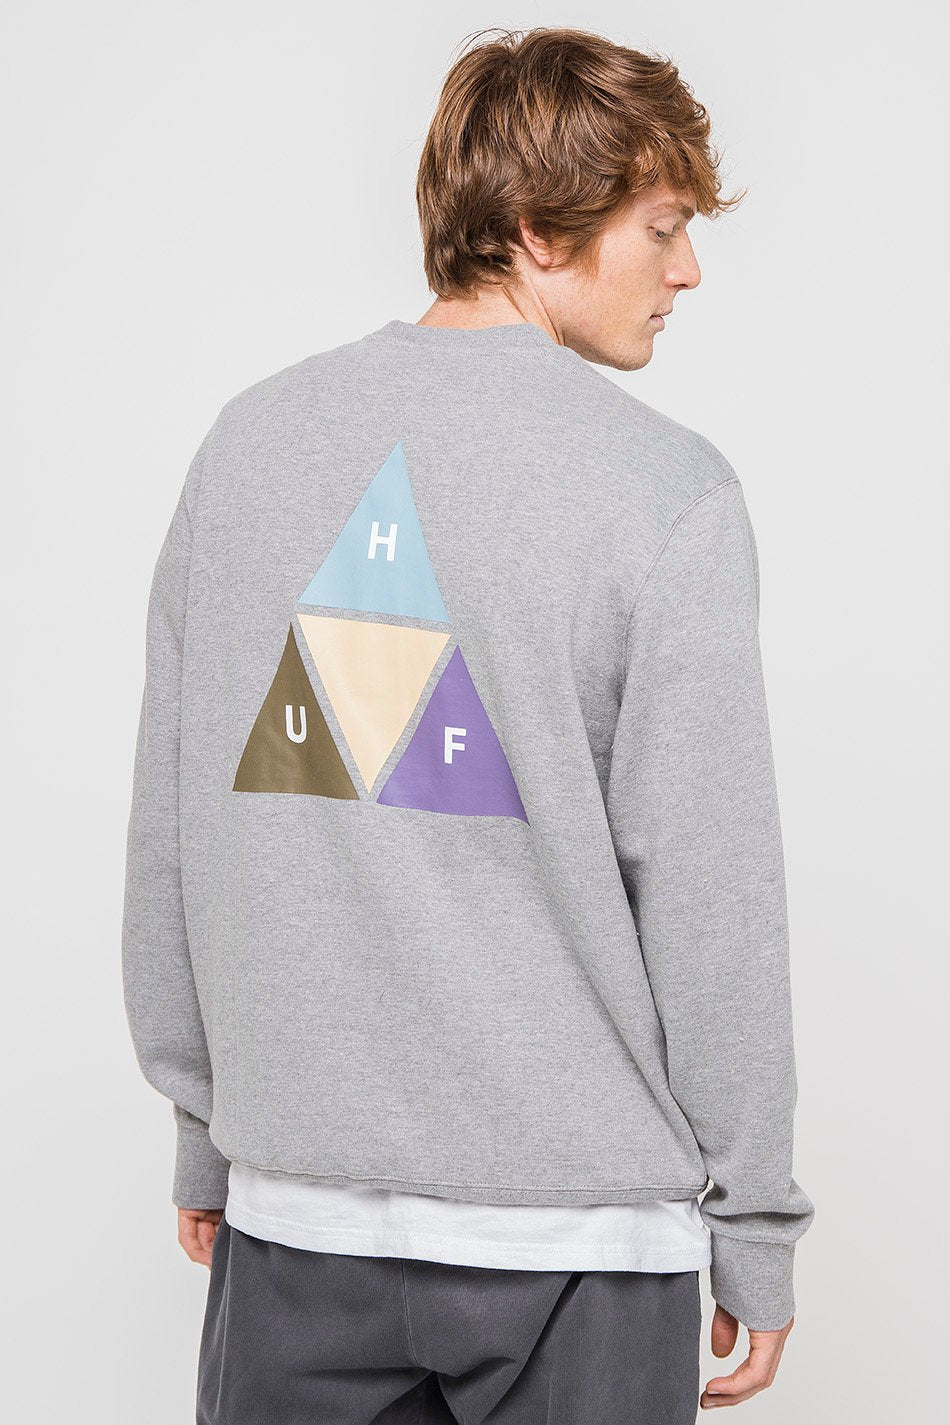 Huf Gyhtr Prism Trail Grey sweatshirt